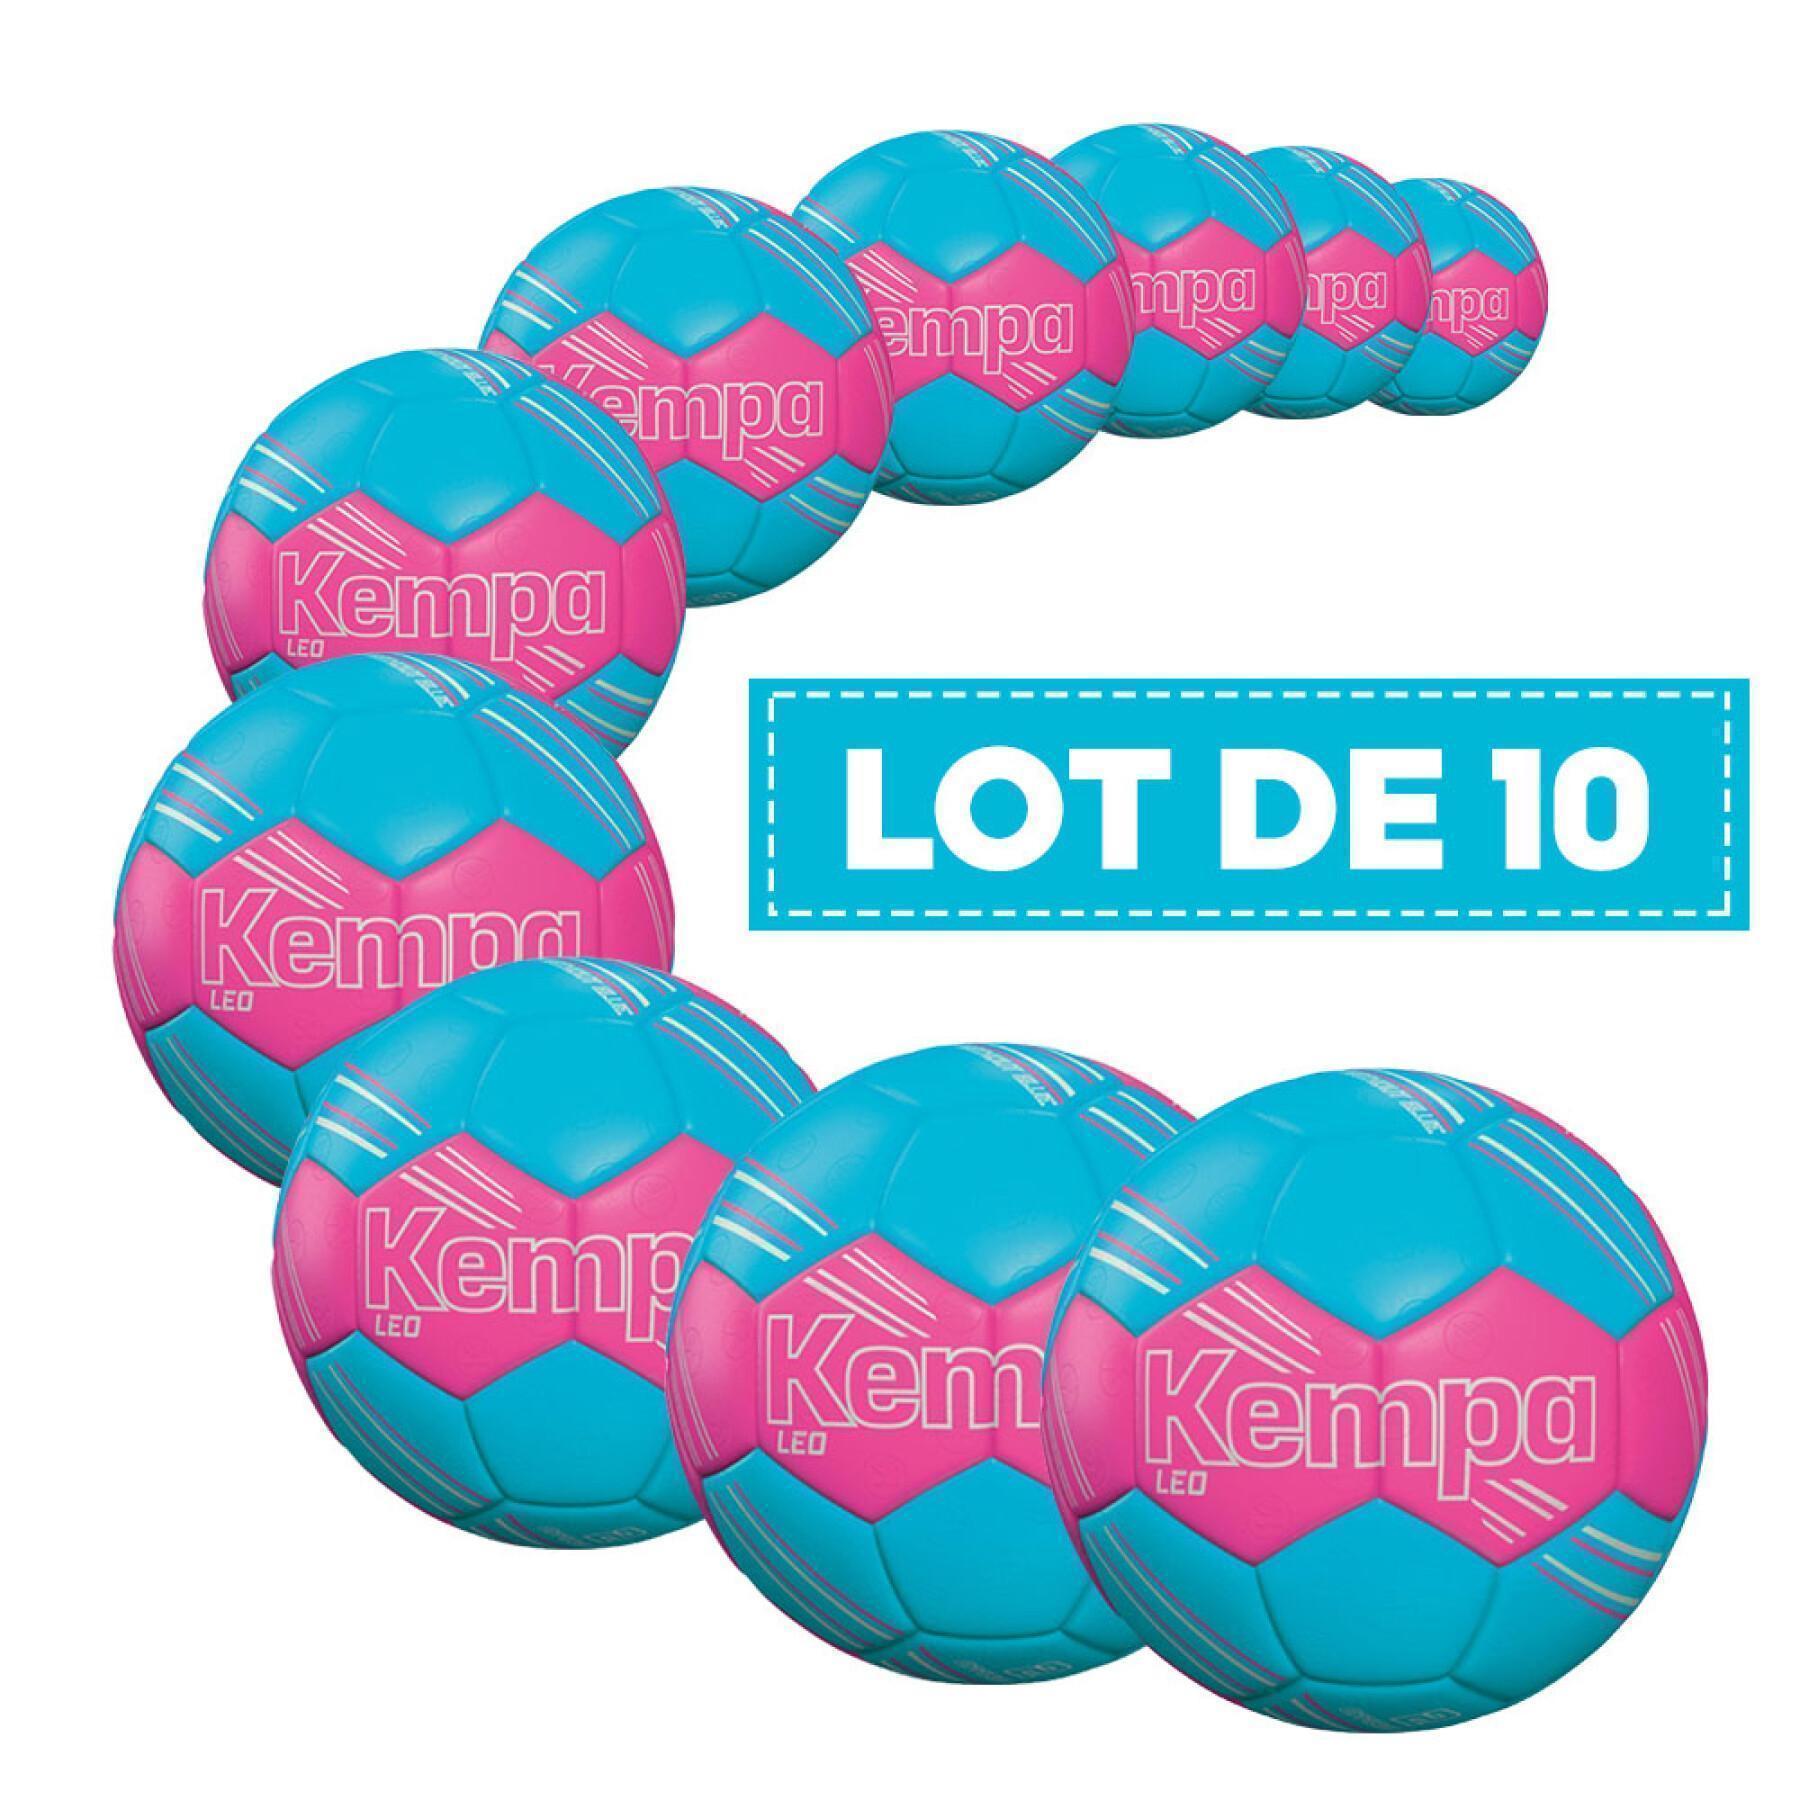 Pack of 10 balloons Kempa Leo